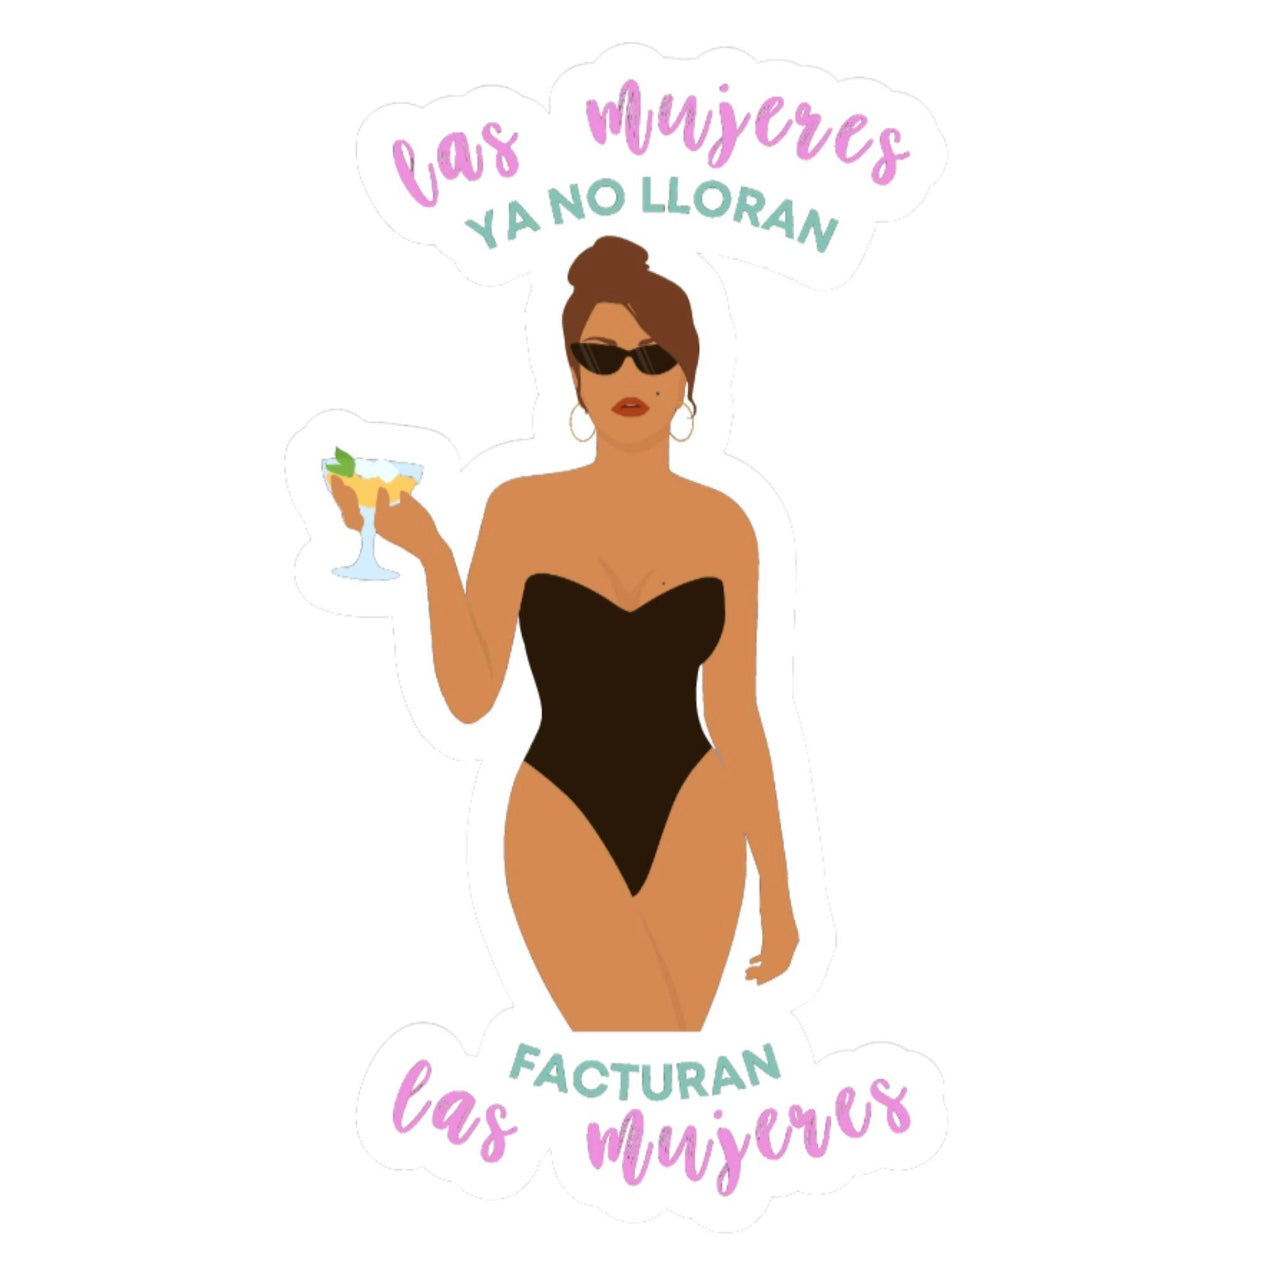 Las Mujeres Facturan Sticker